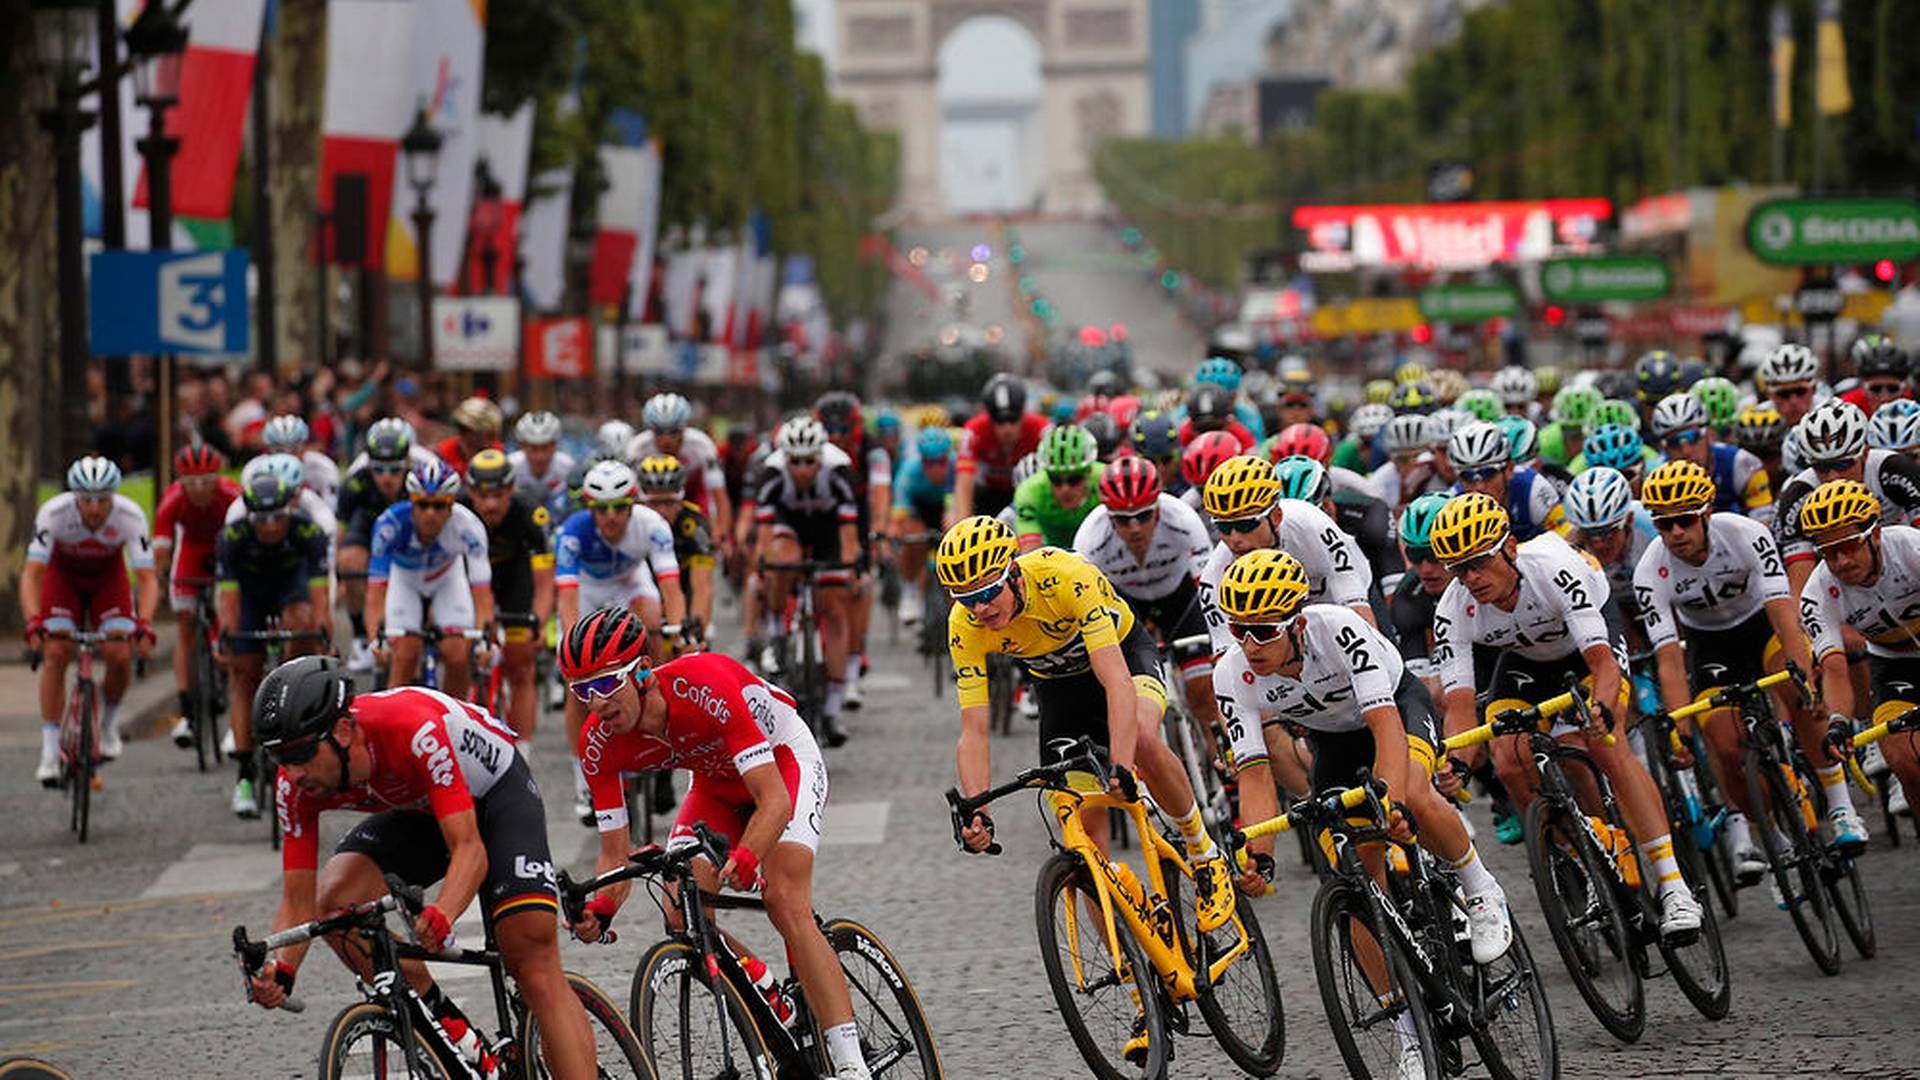 Billede fra sidste års afsluttende Tour de France-etape med mål i Paris. | Foto: Ritzau Scanpix/AP/Christophe Ena